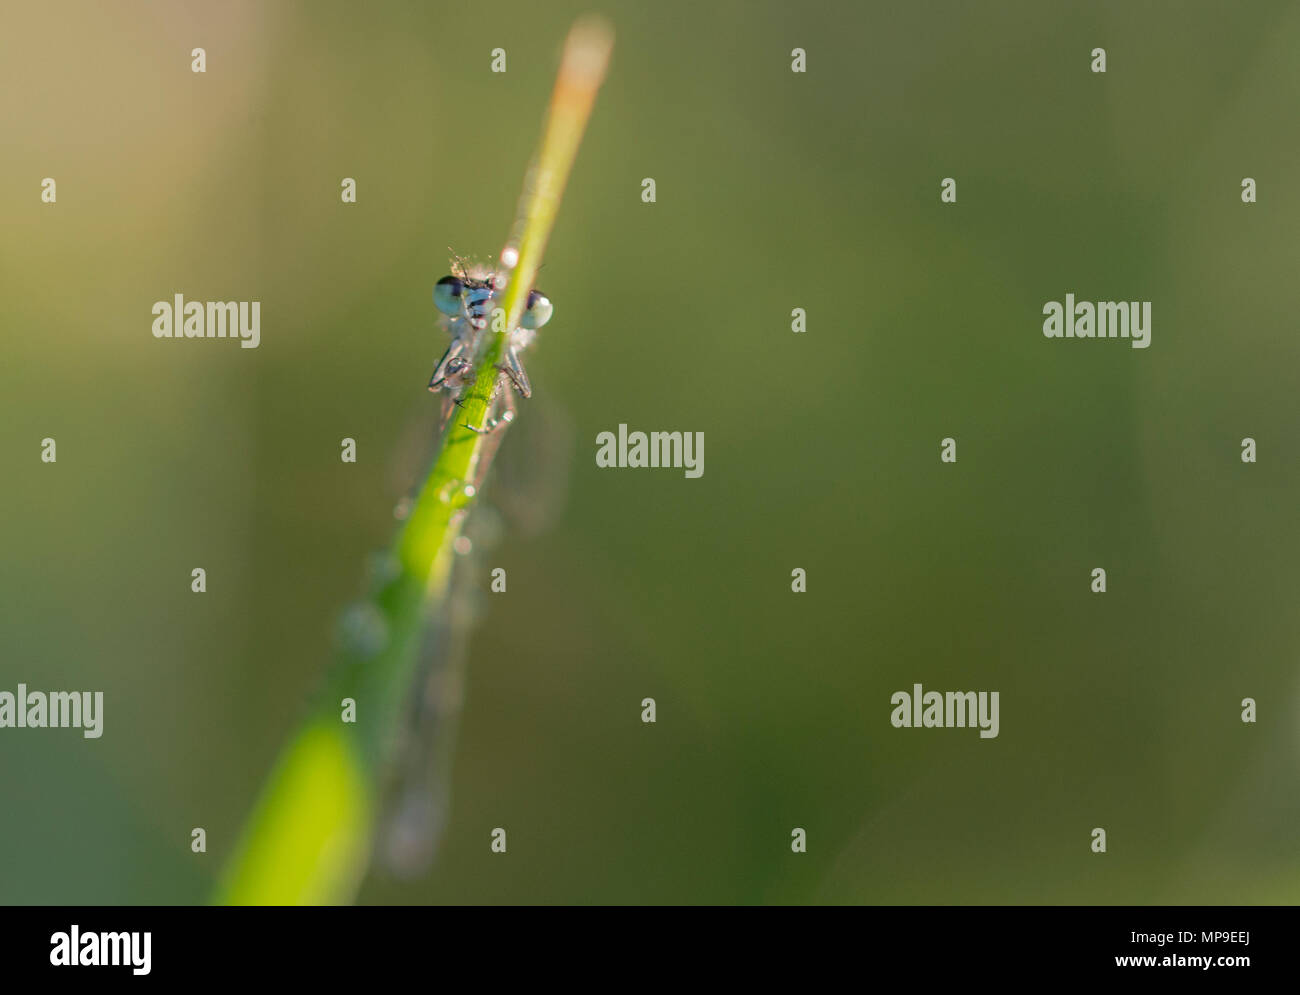 Carino damselfly su una lama di erba guardando rotondo Foto Stock